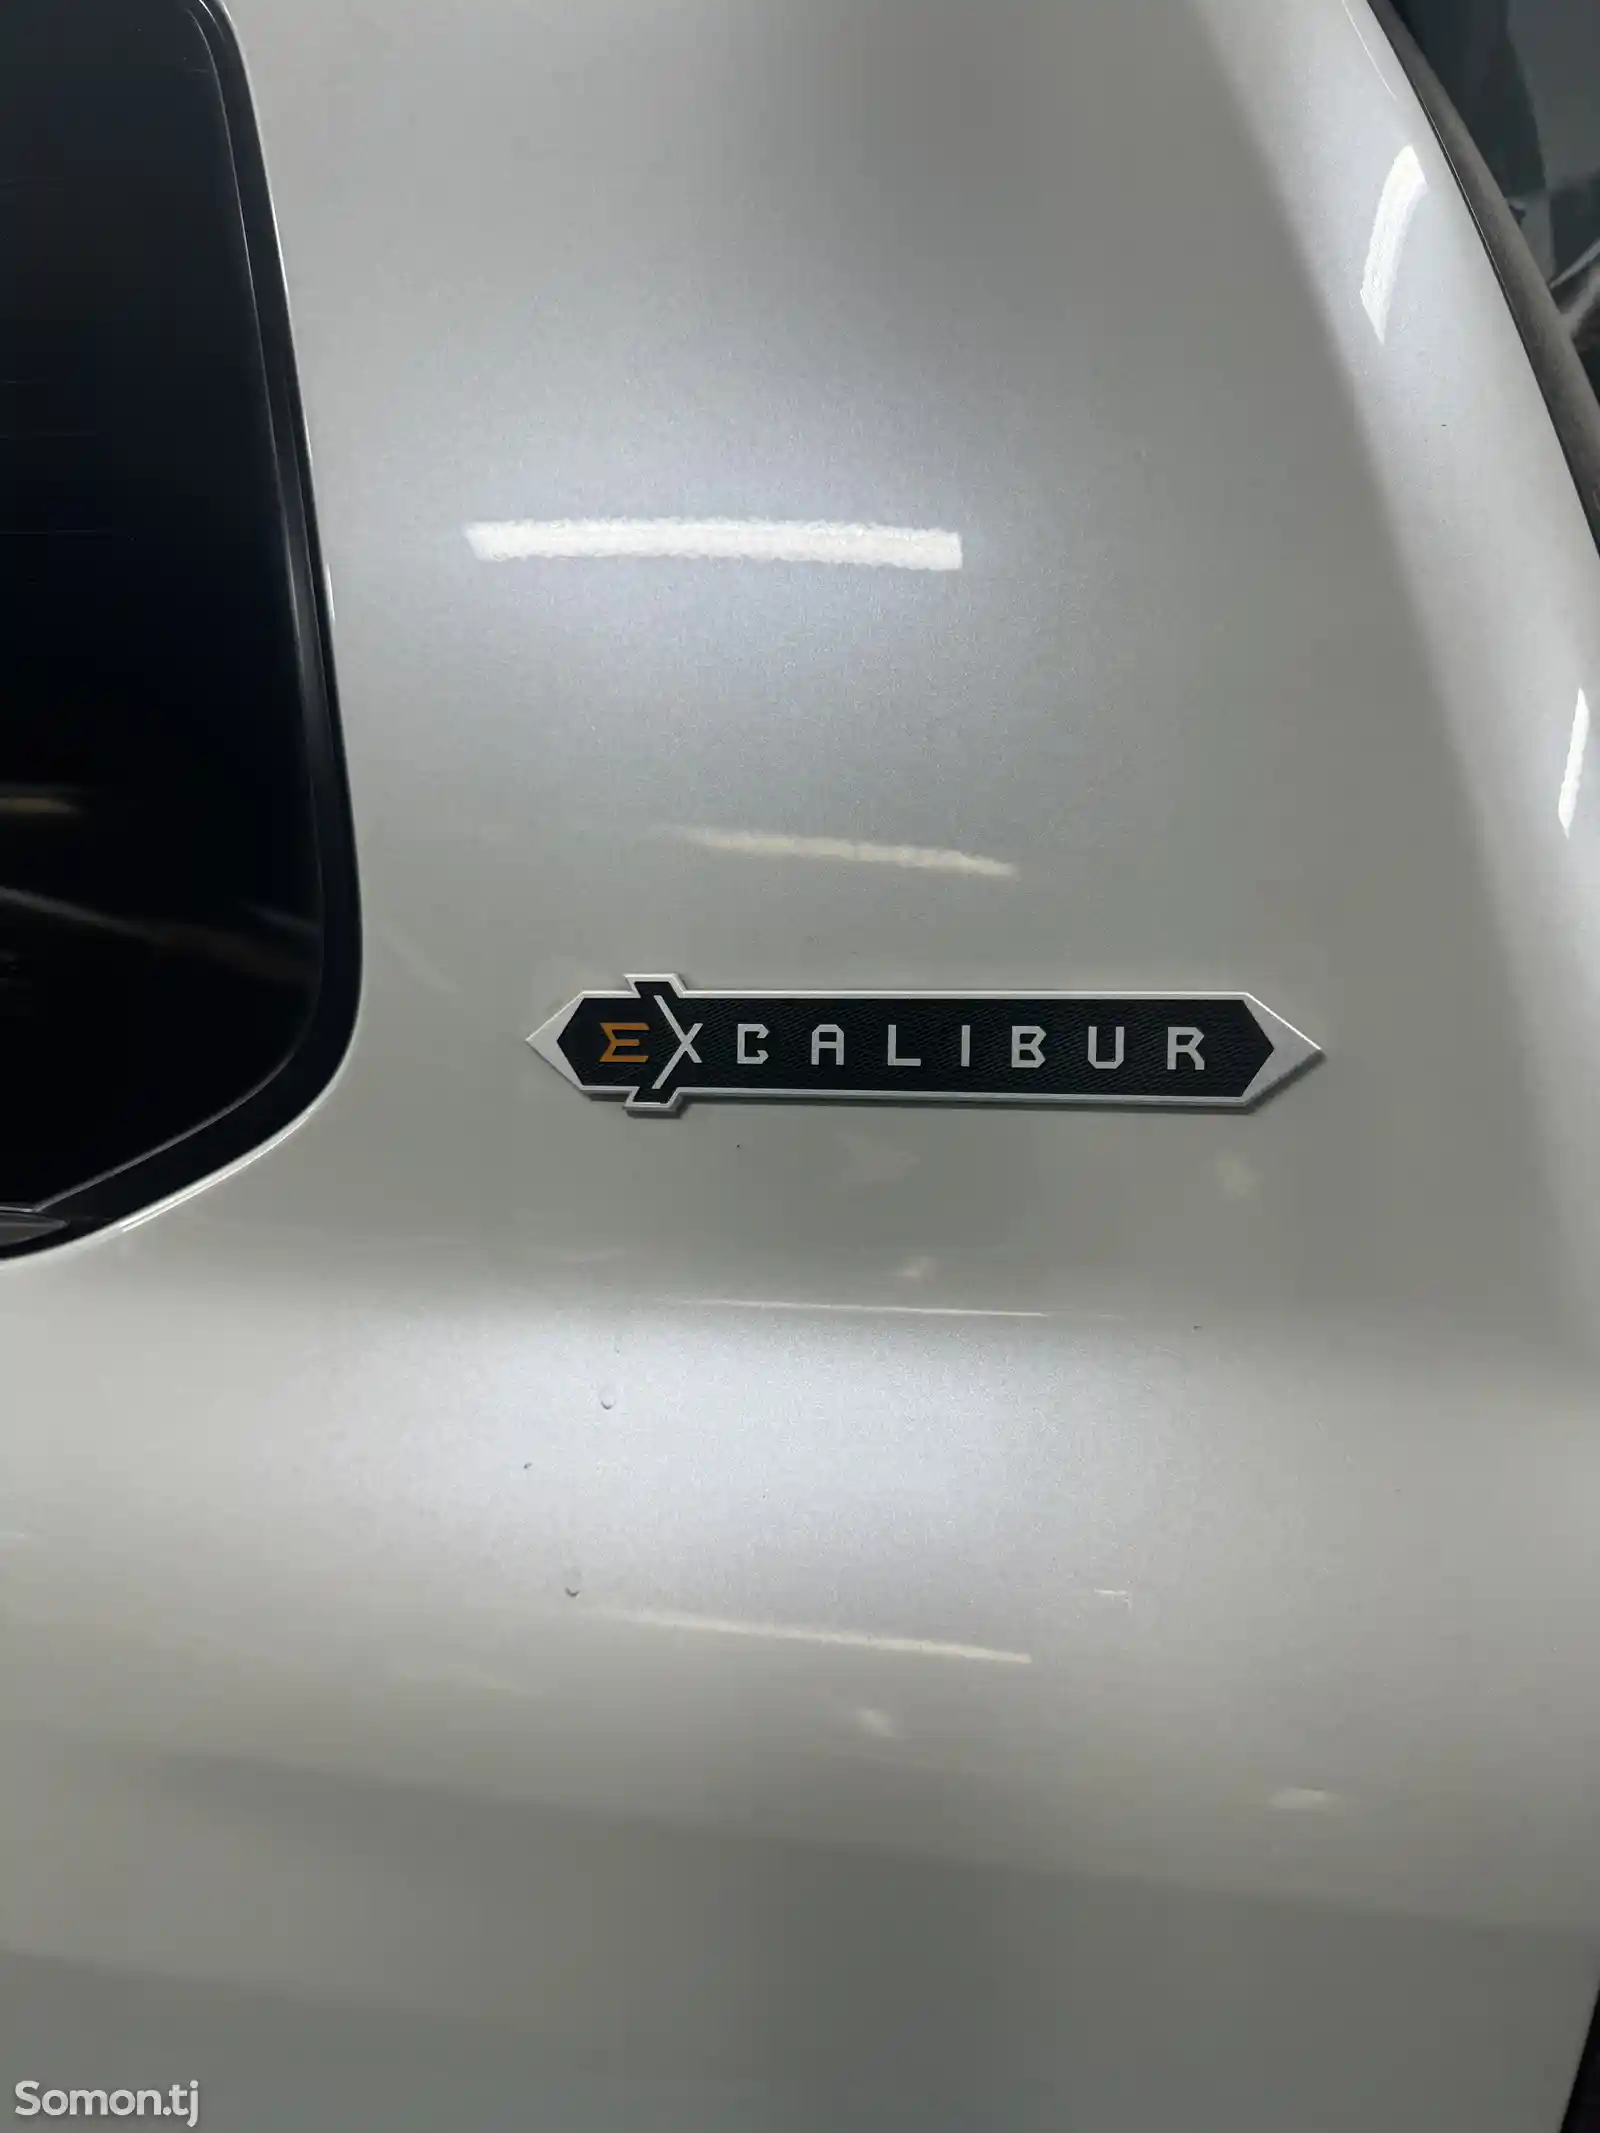 Надпись Excalibur-1